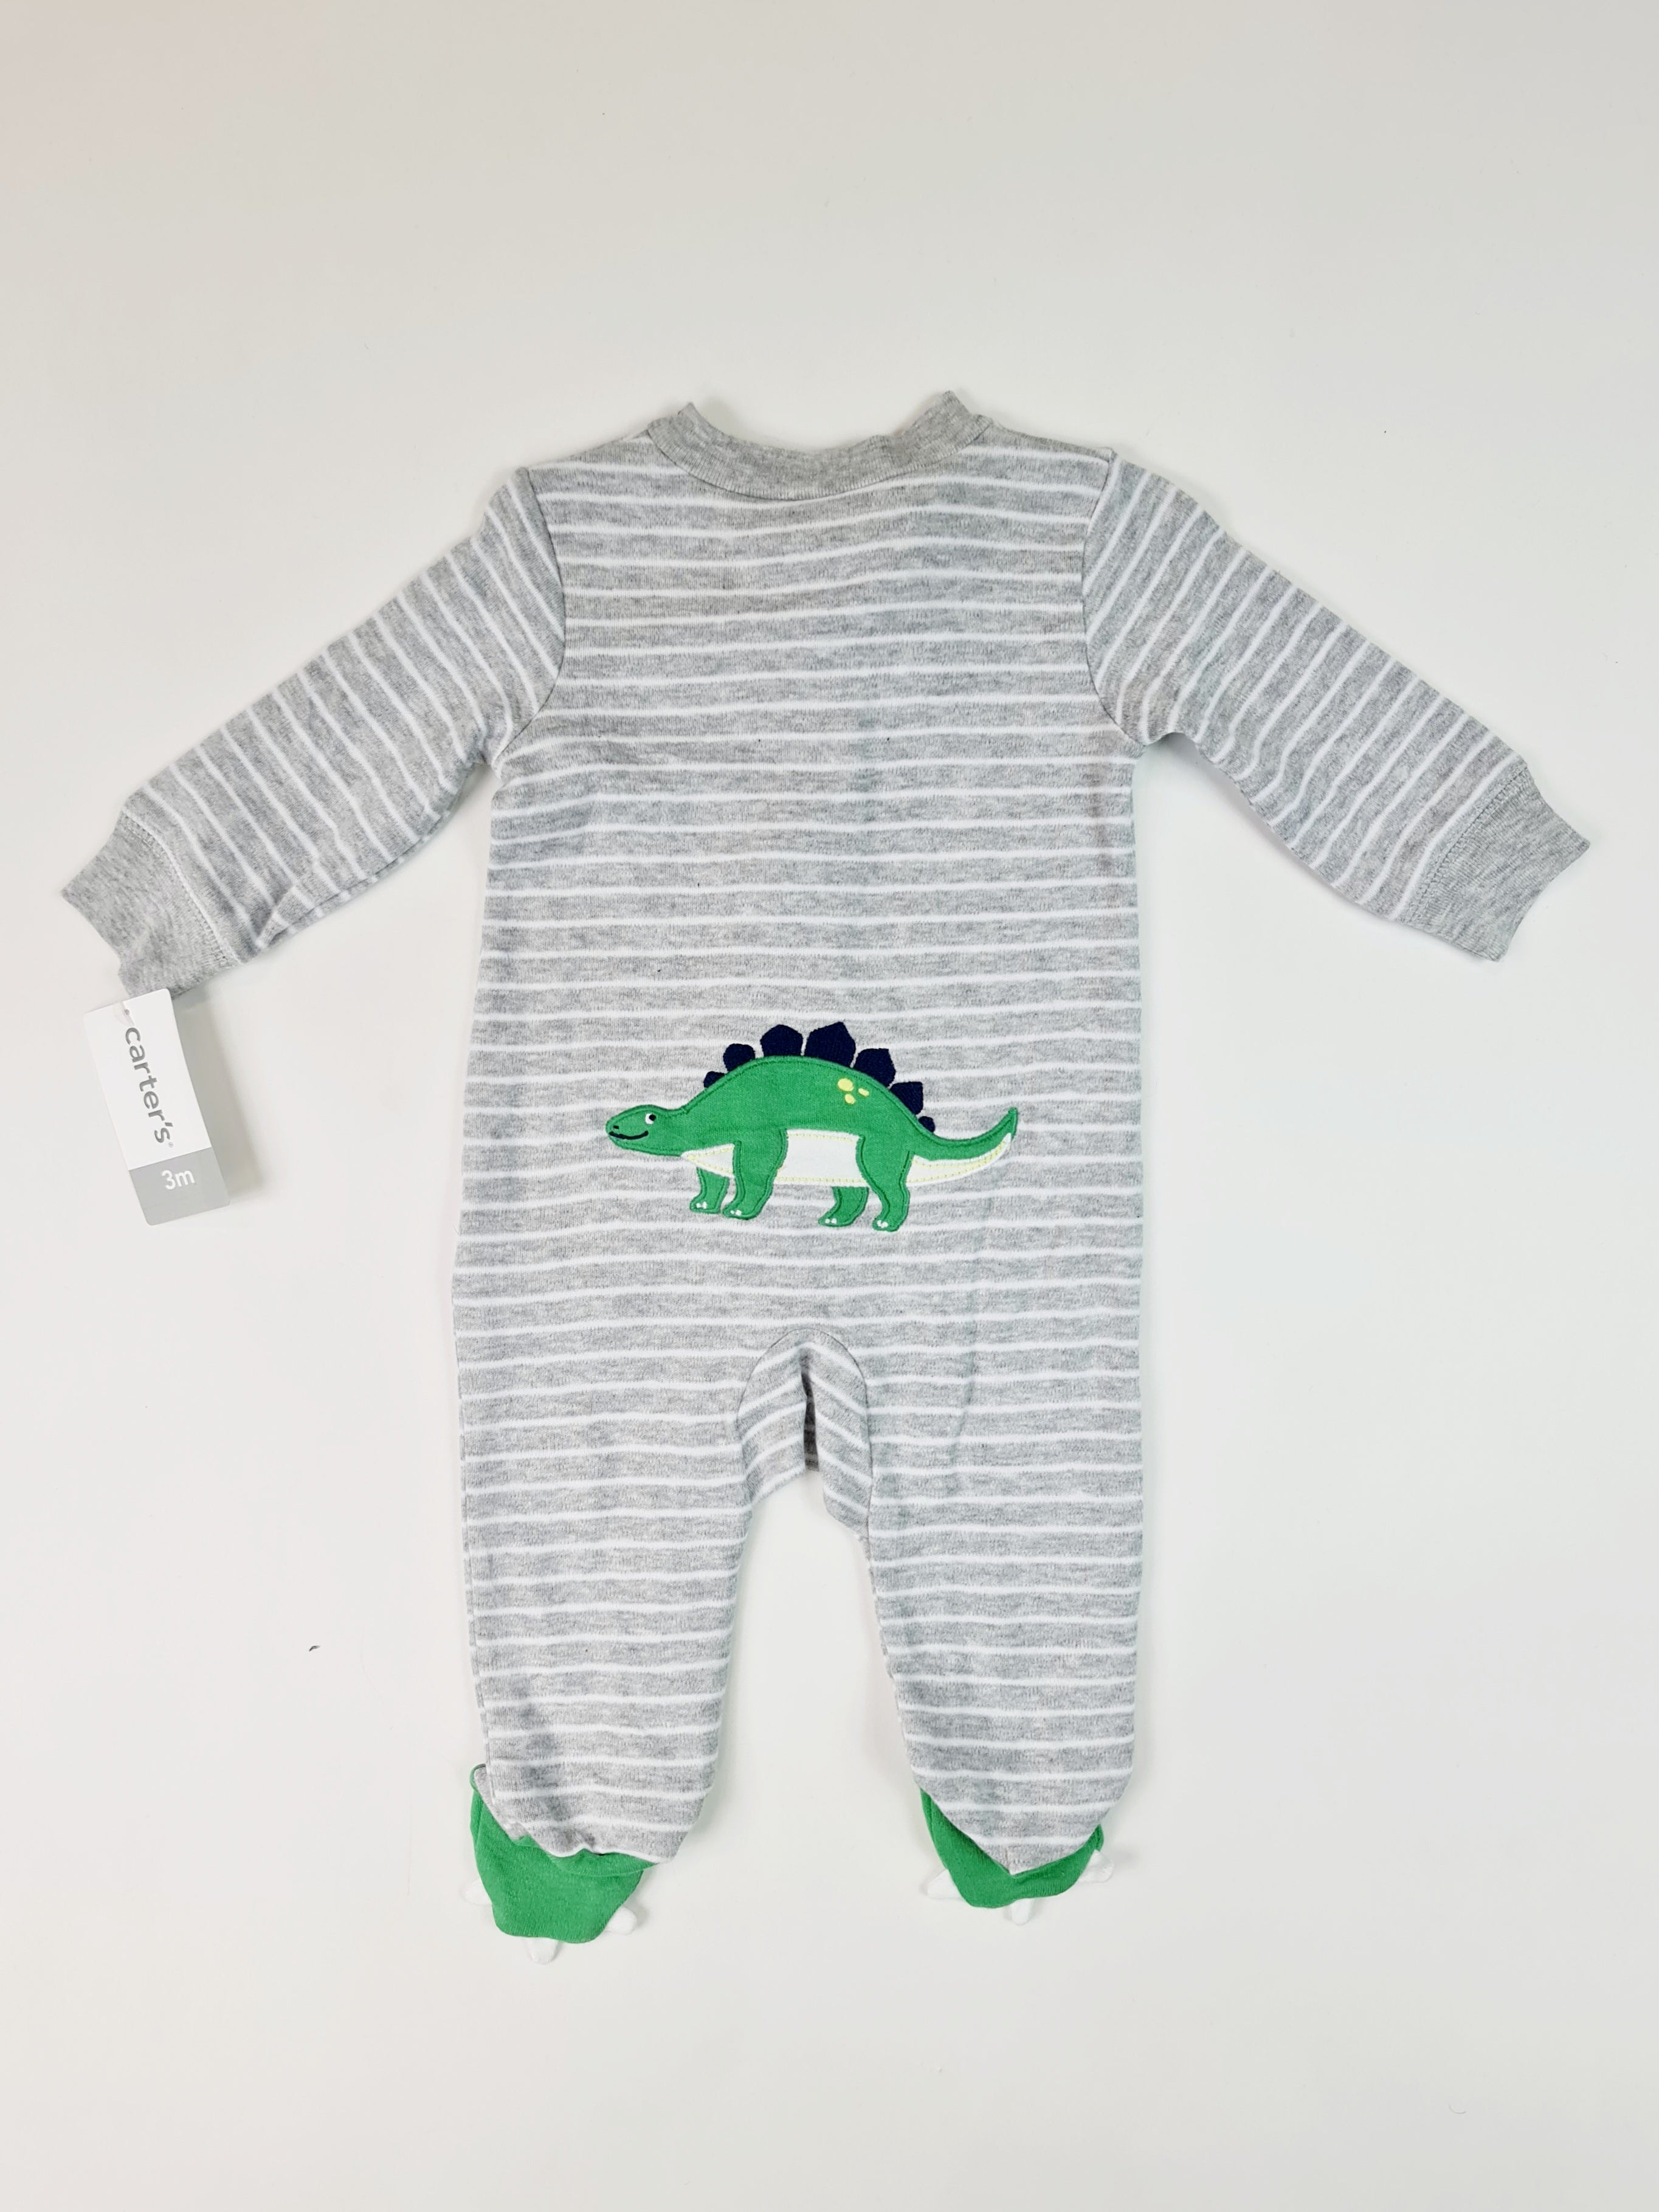 Pijama Niño Bebé, Carter's (3m)